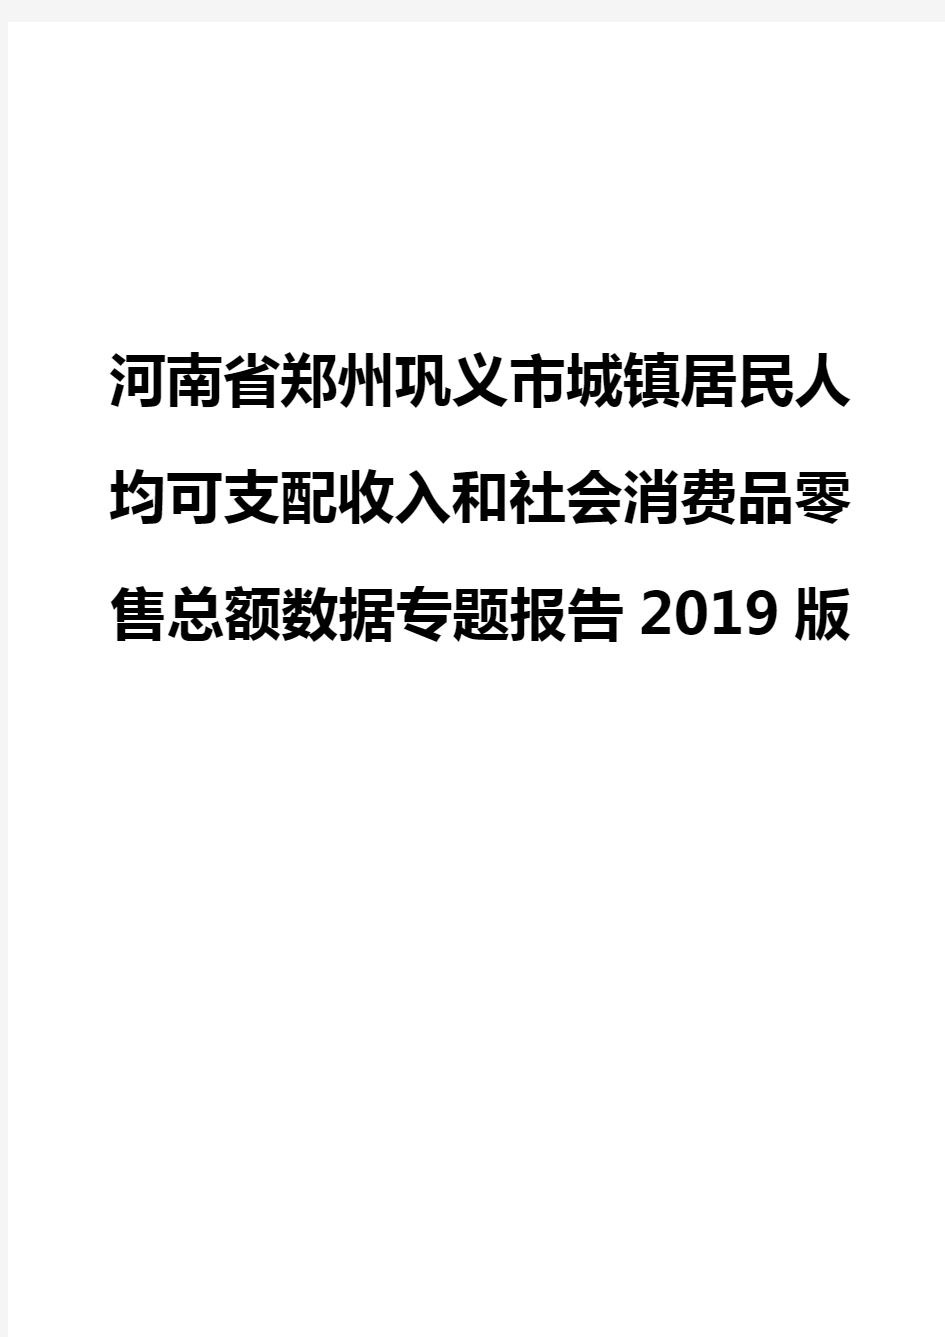 河南省郑州巩义市城镇居民人均可支配收入和社会消费品零售总额数据专题报告2019版